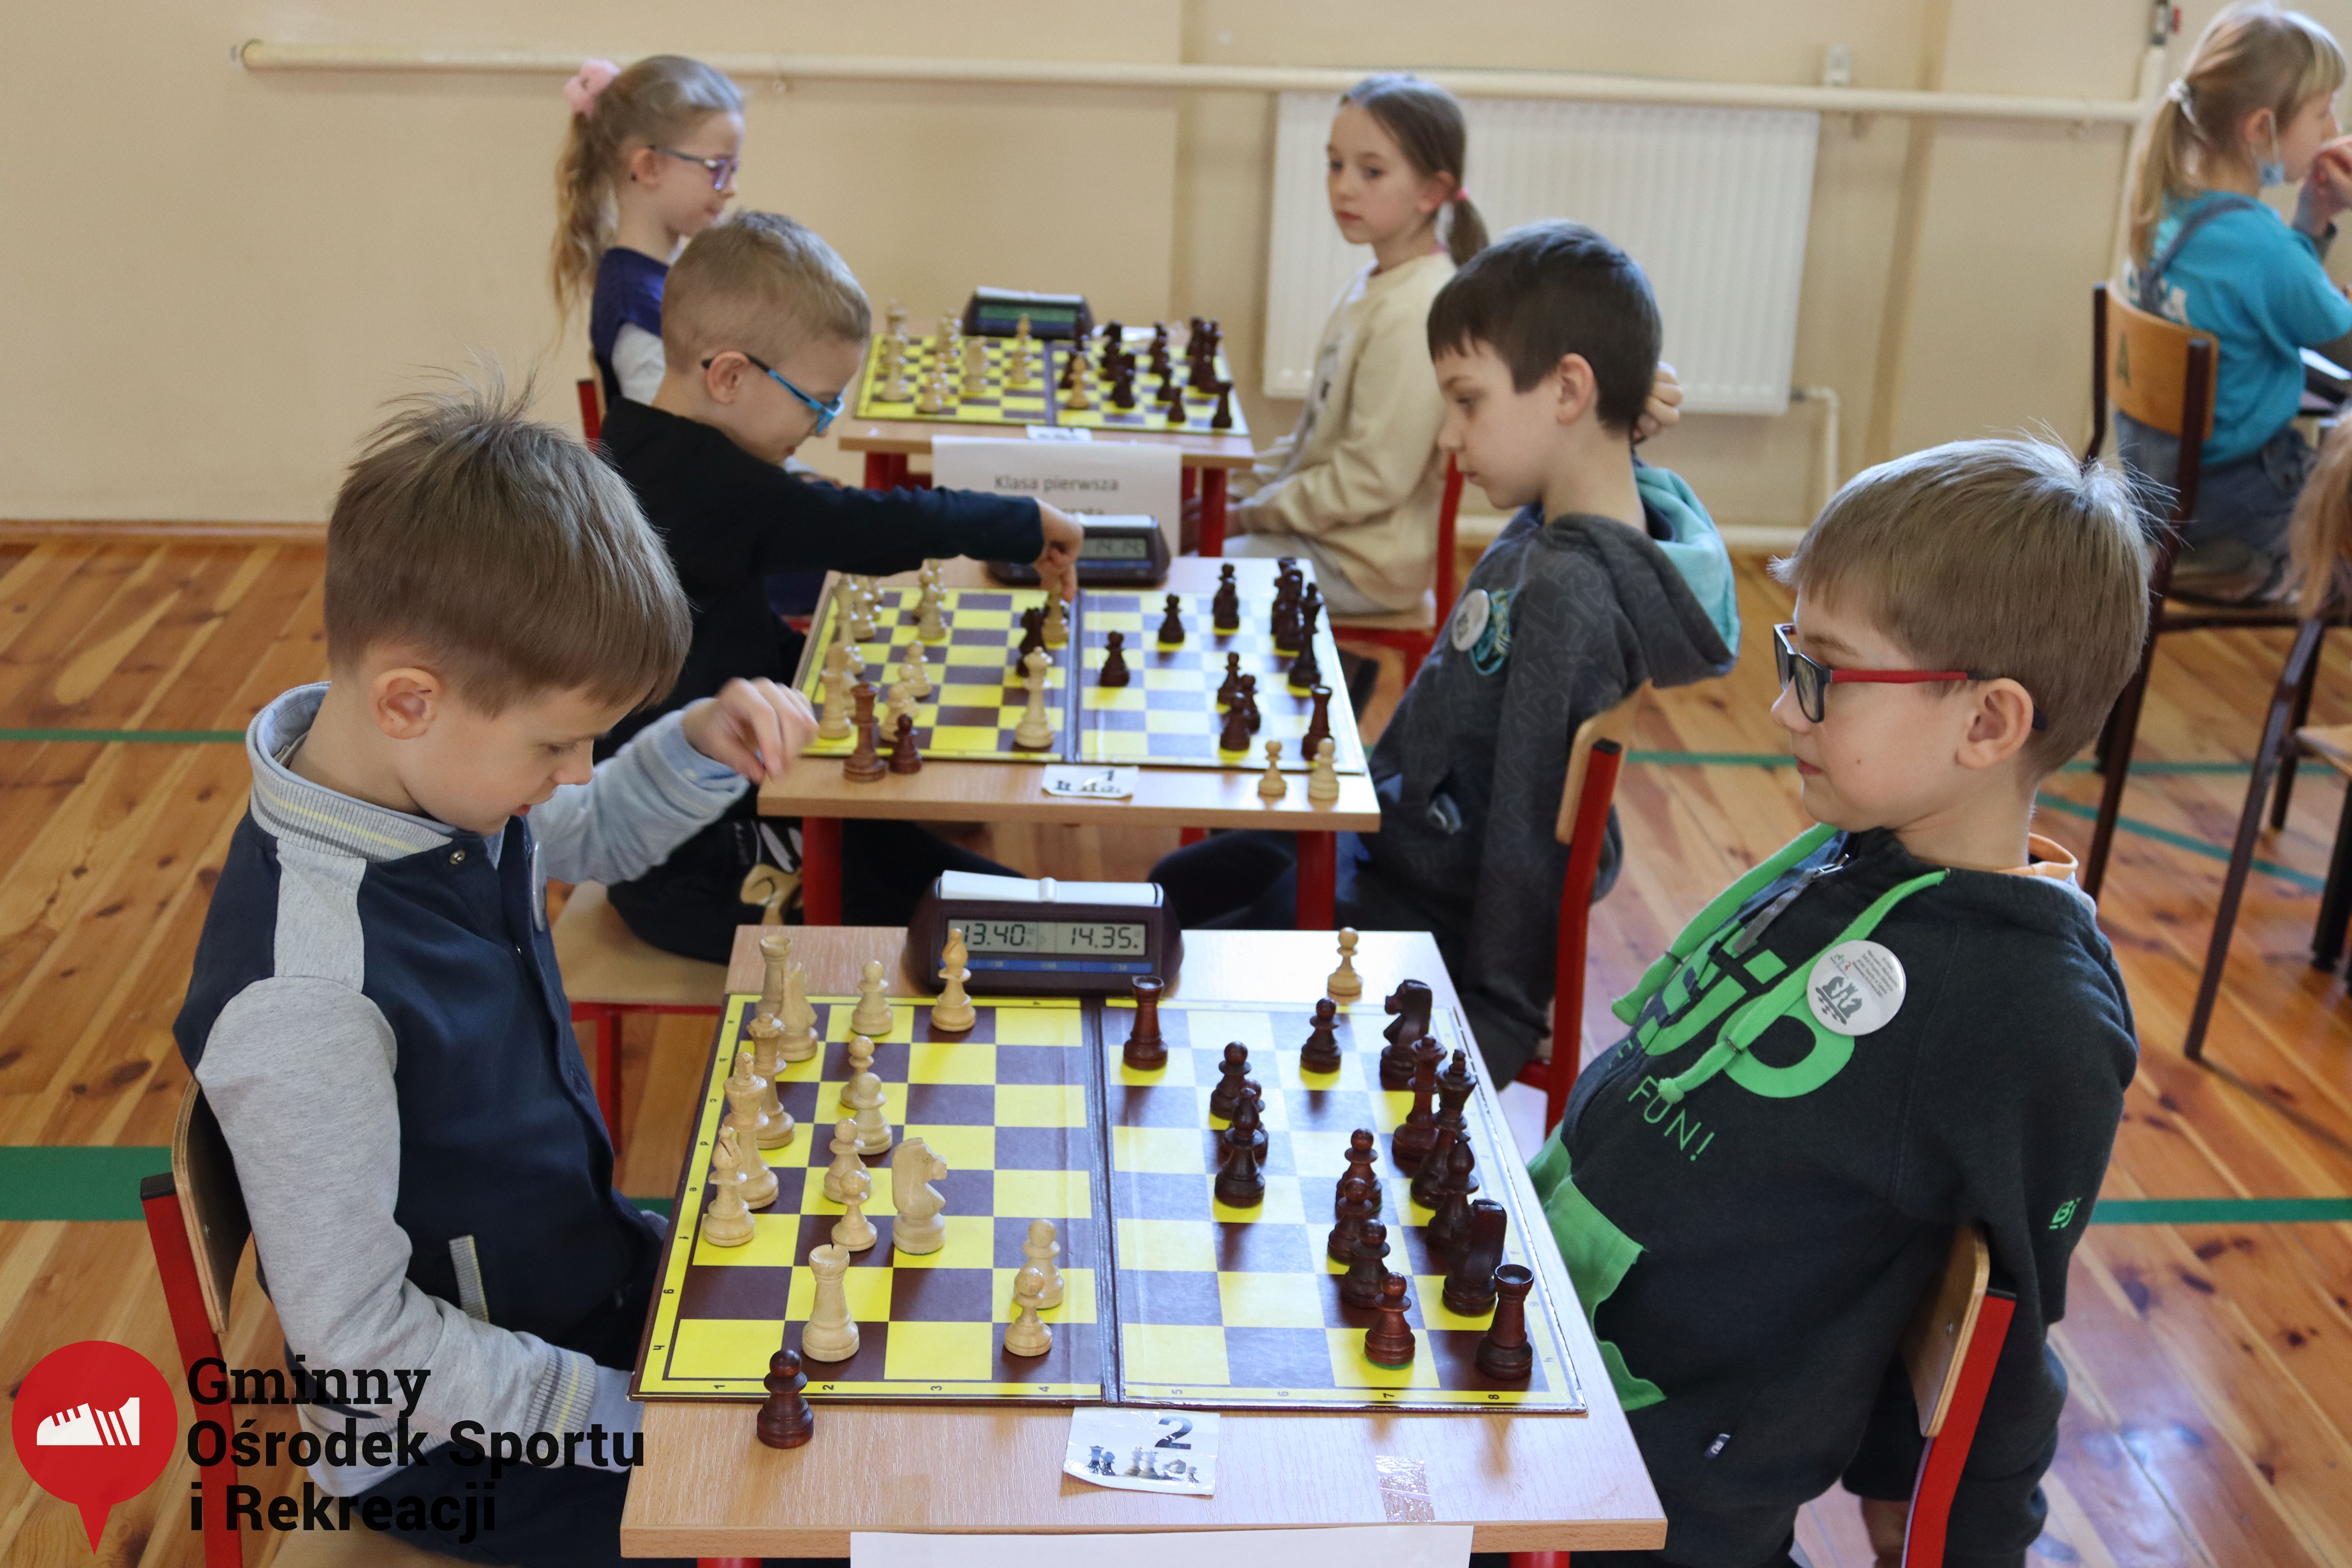 2022.03.12-13 Turniej szachowy - Edukacja przez Szachy042.jpg - 2,01 MB